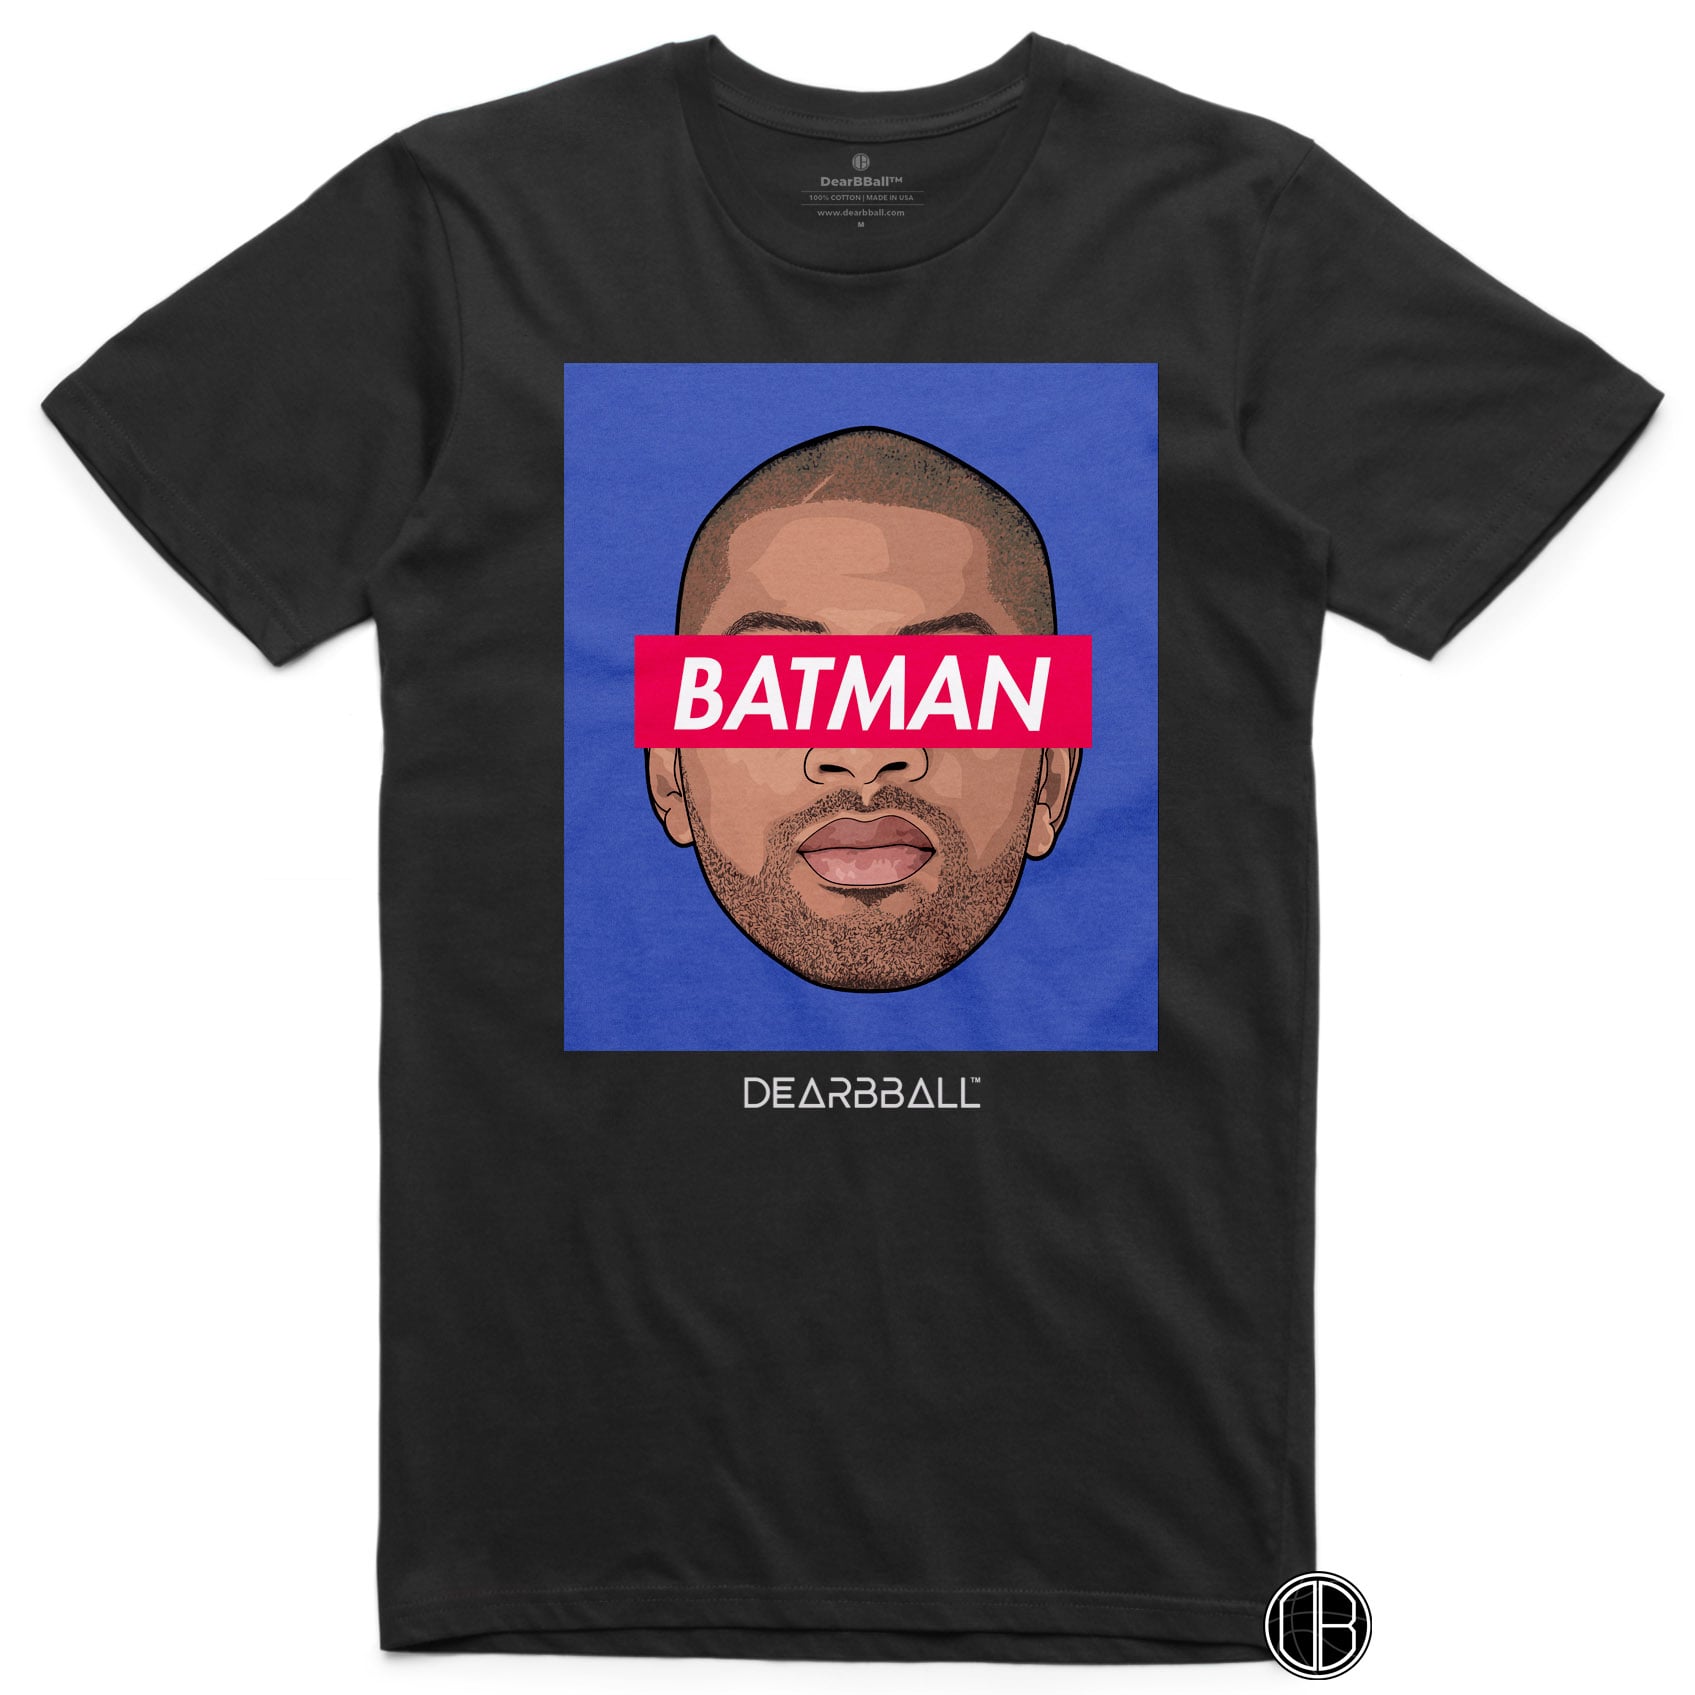 DearBBall T-Shirt - BATMAN Blue Edition